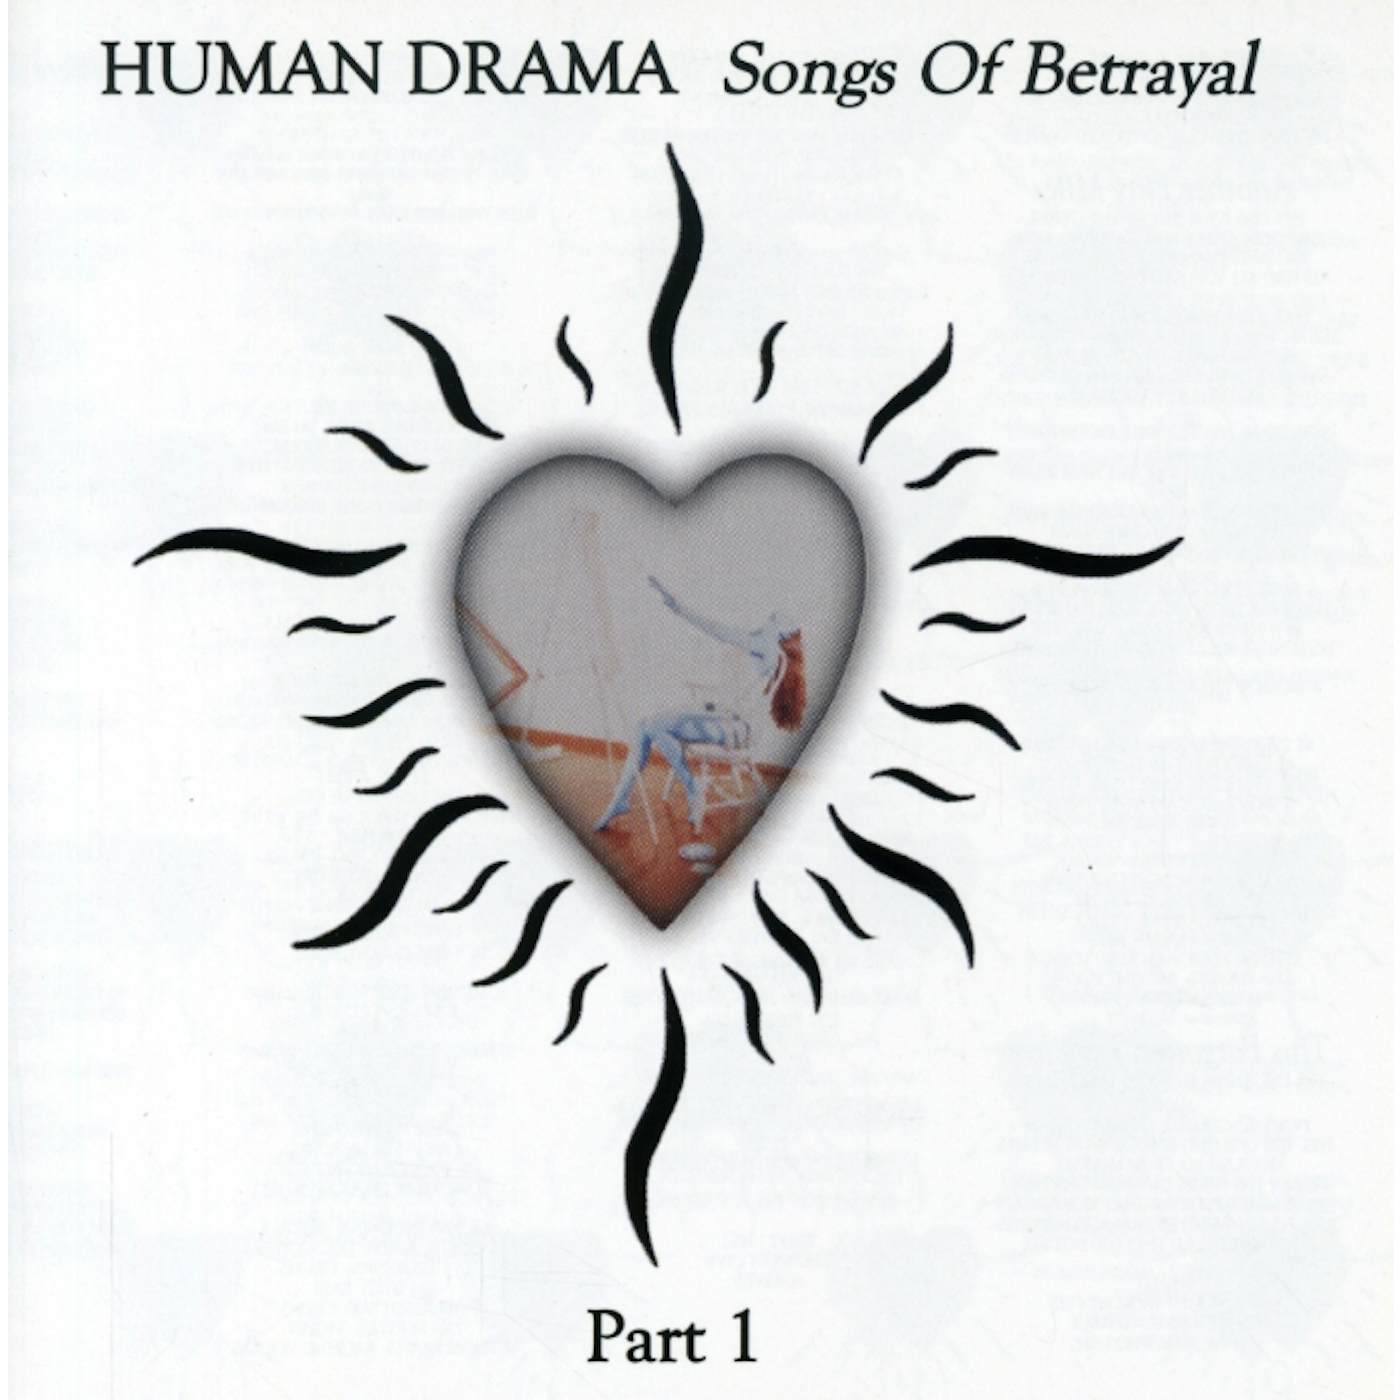 Human Drama SONGS OF BETRAYAL 1 CD